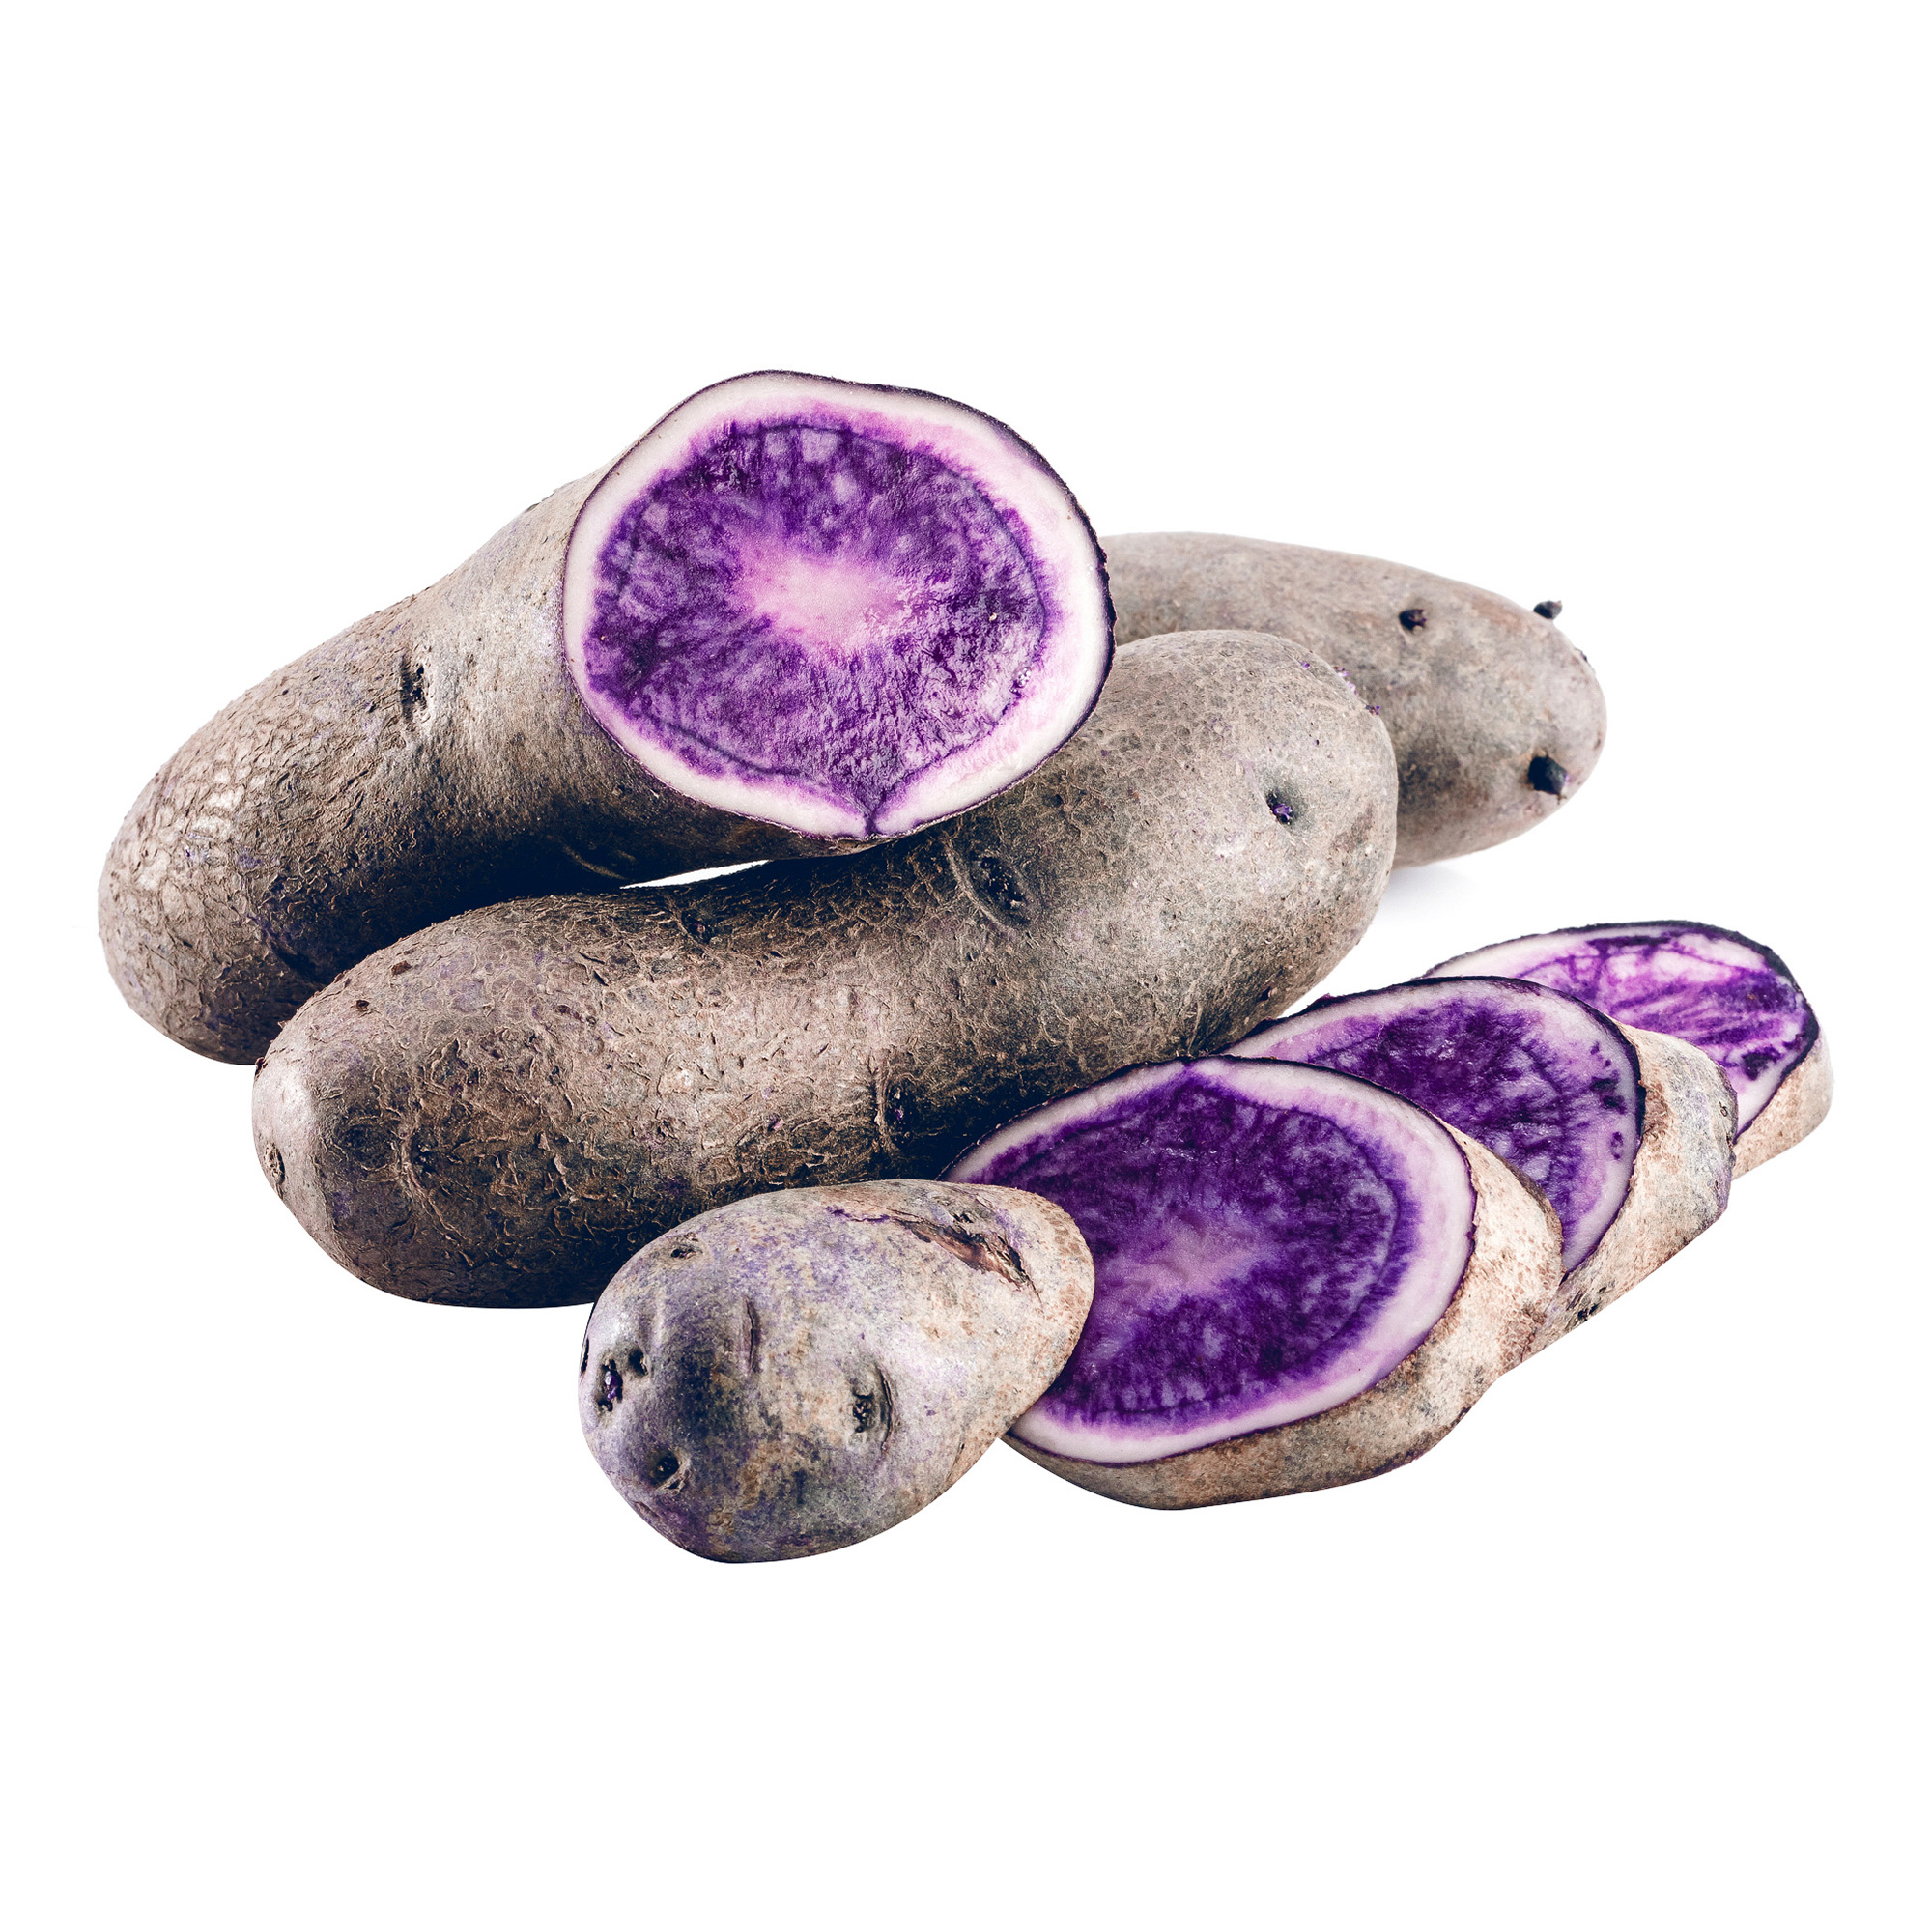 Сорт картофеля перуанский фиолетовый (Purple Peruvian)